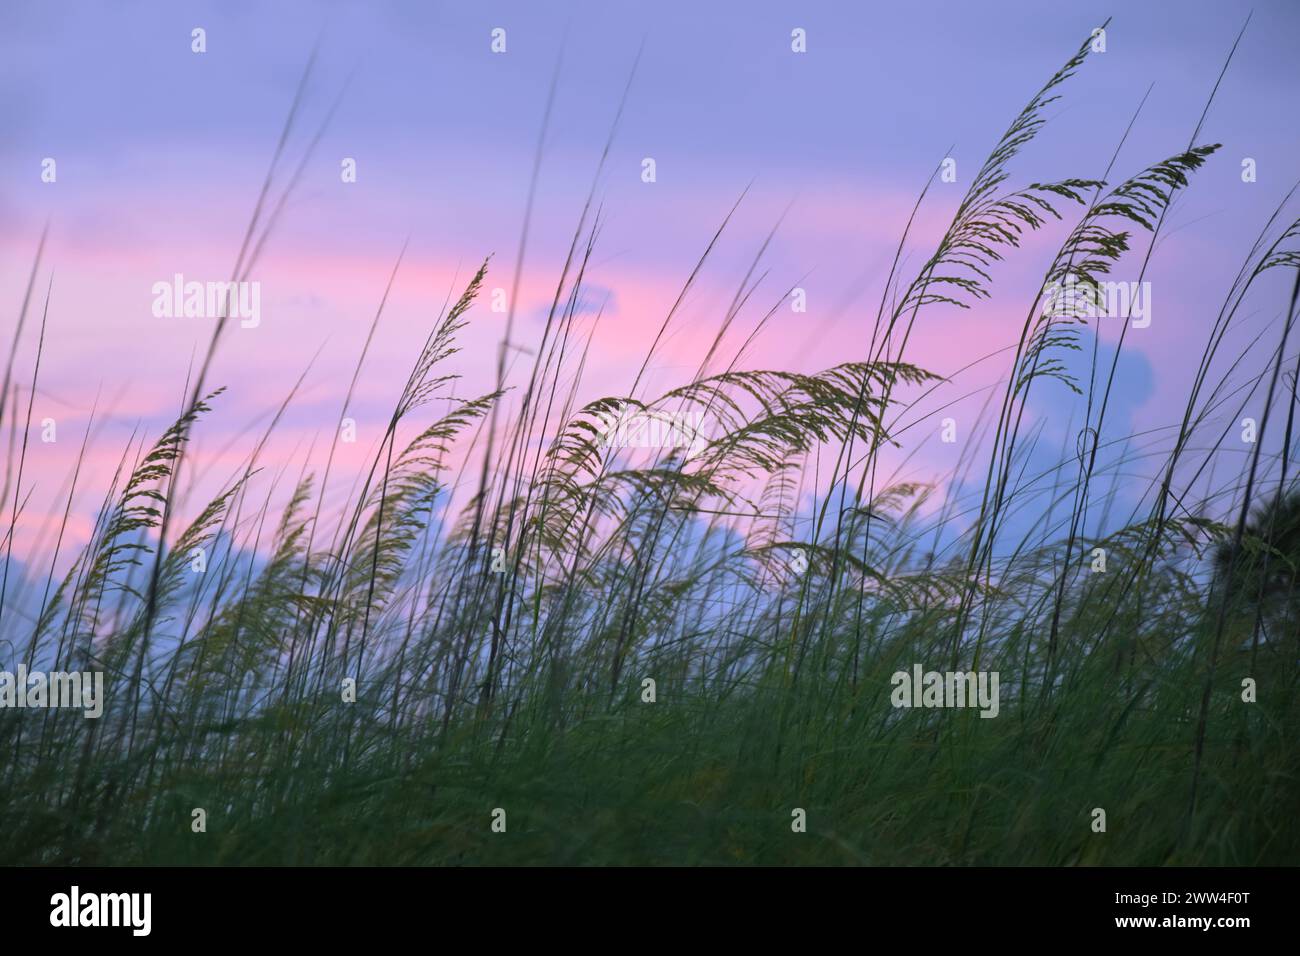 Dune ou herbe de plage (uniola paniculata) se déplaçant dans le vent pendant l'heure bleue, après le coucher du soleil avec le ciel violet bleuâtre. Banque D'Images